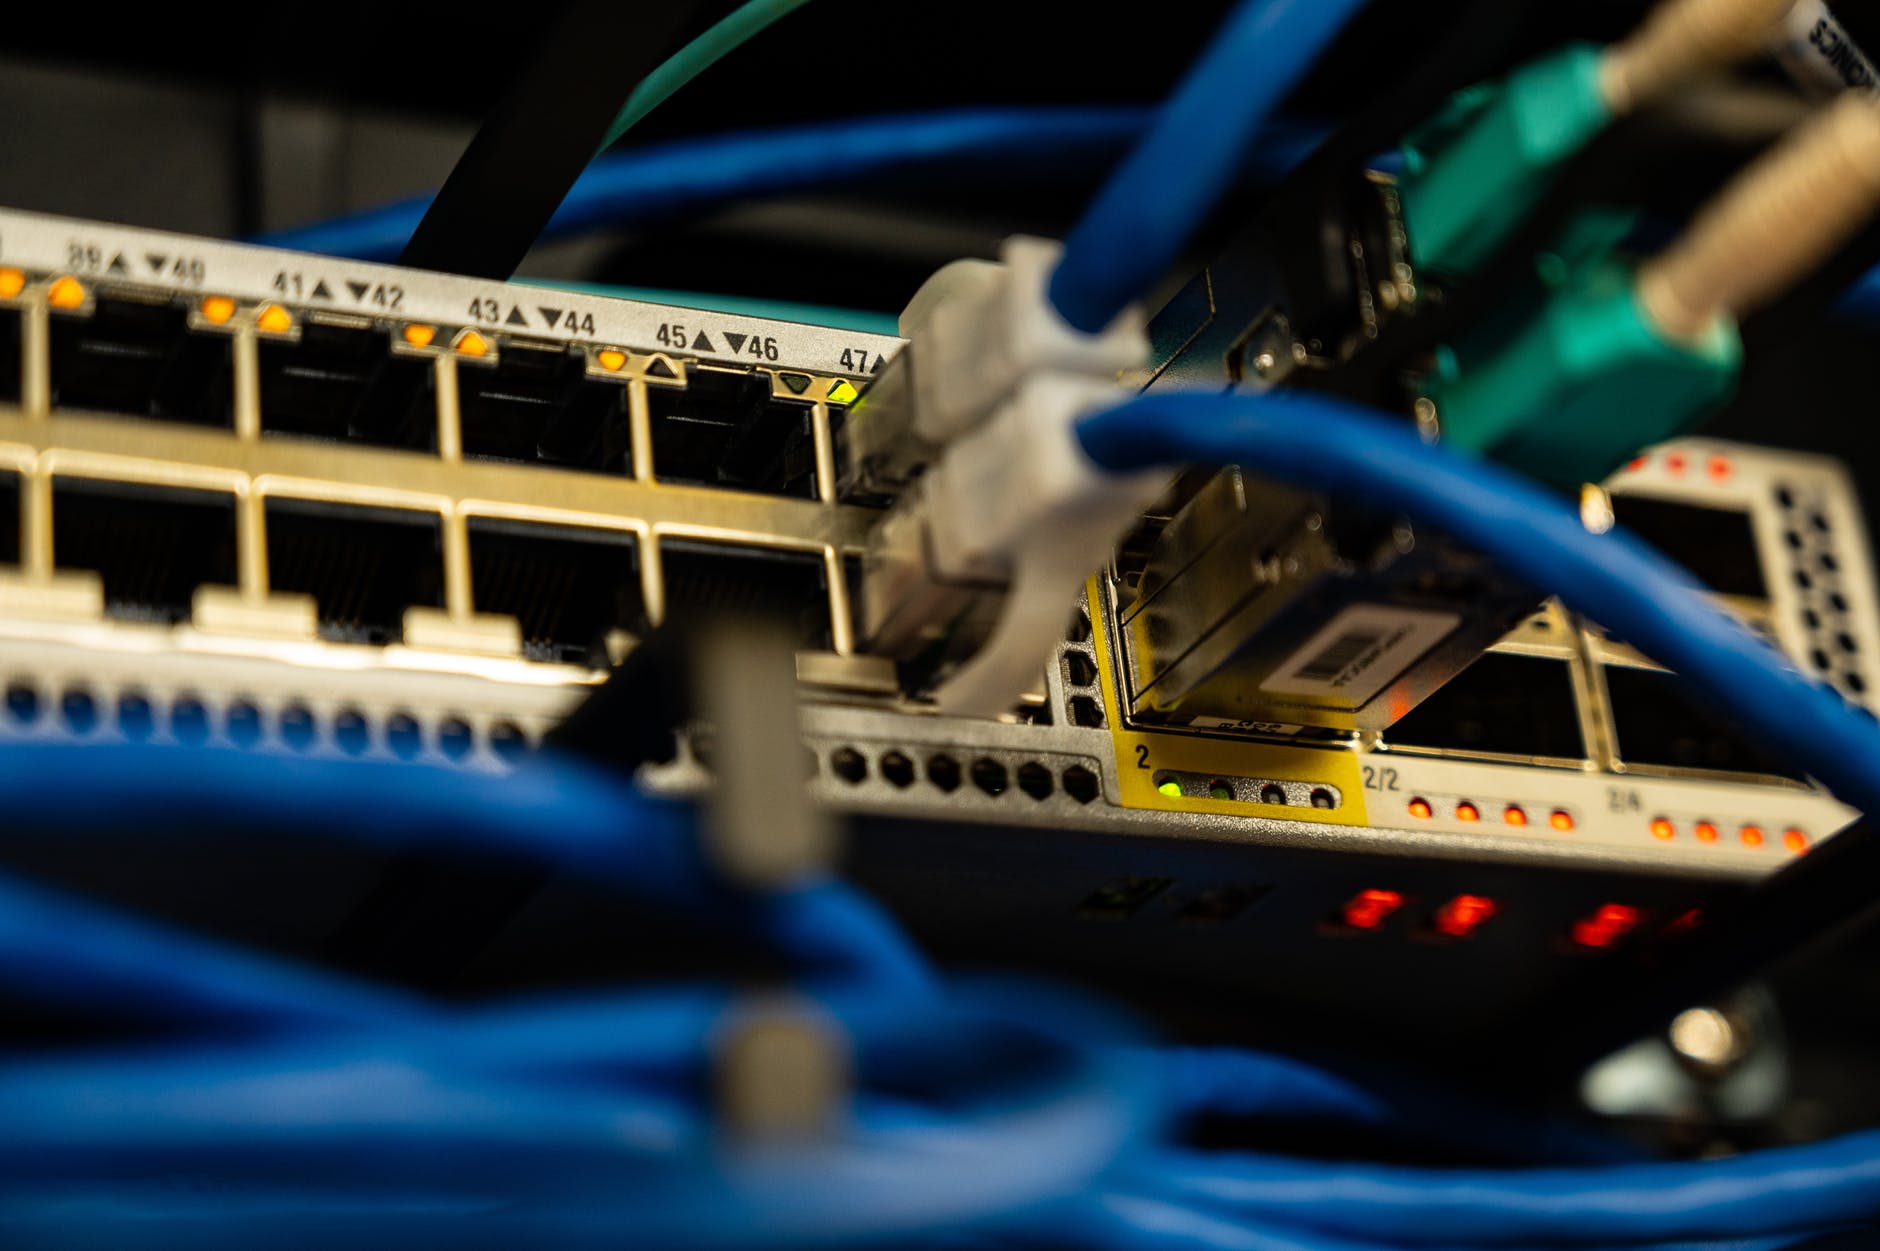 ¿Cómo configurar la seguridad de un router?